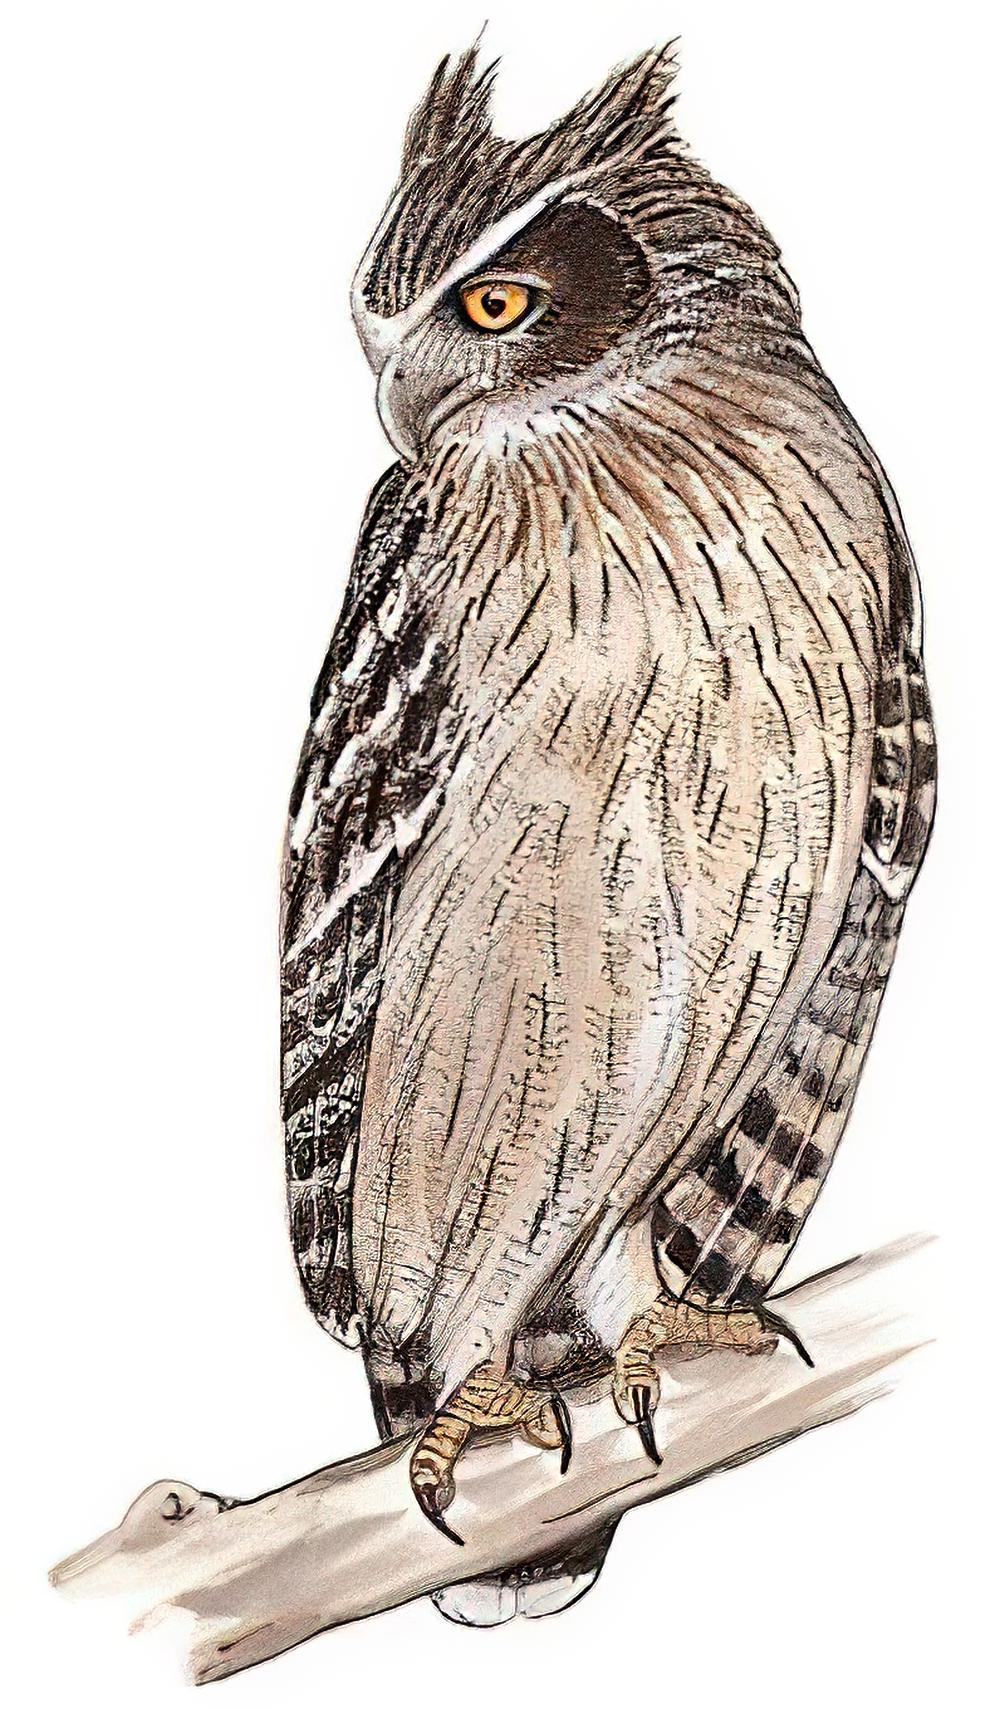 毛腿渔鸮 / Blakiston\'s Fish Owl / Bubo blakistoni